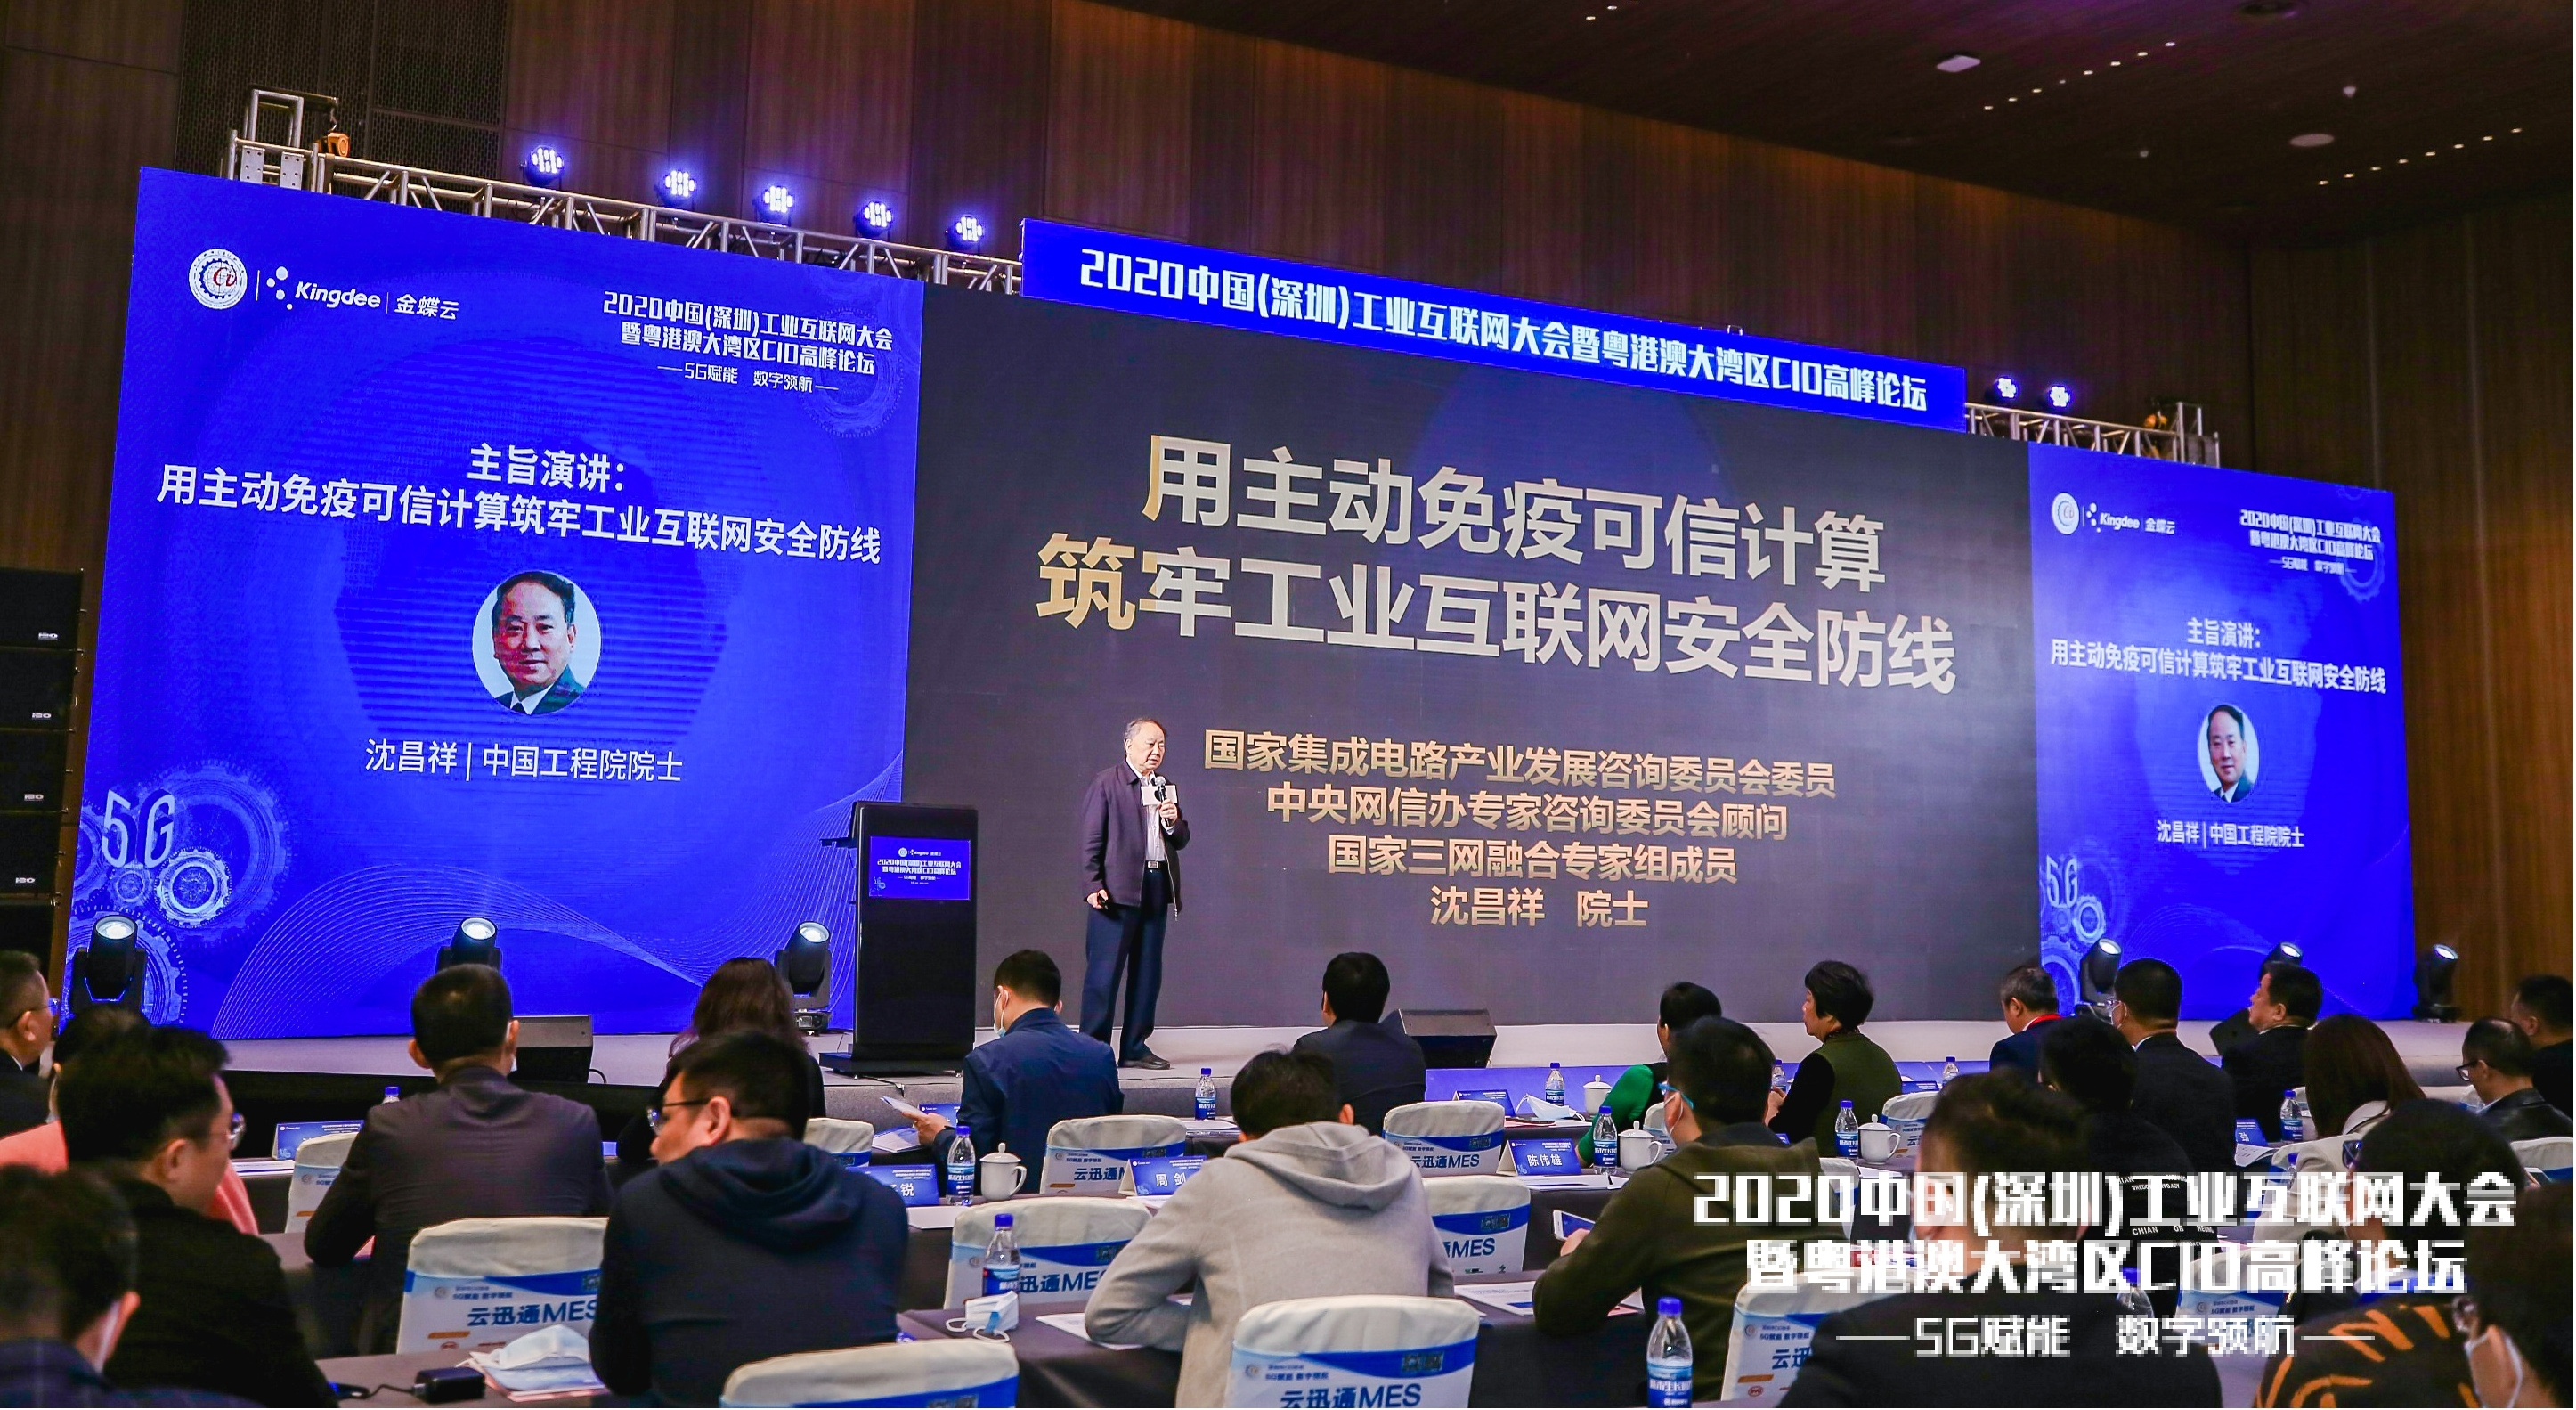 2020中国深圳工业互联网大会暨粤港澳大湾区CIO高峰论坛